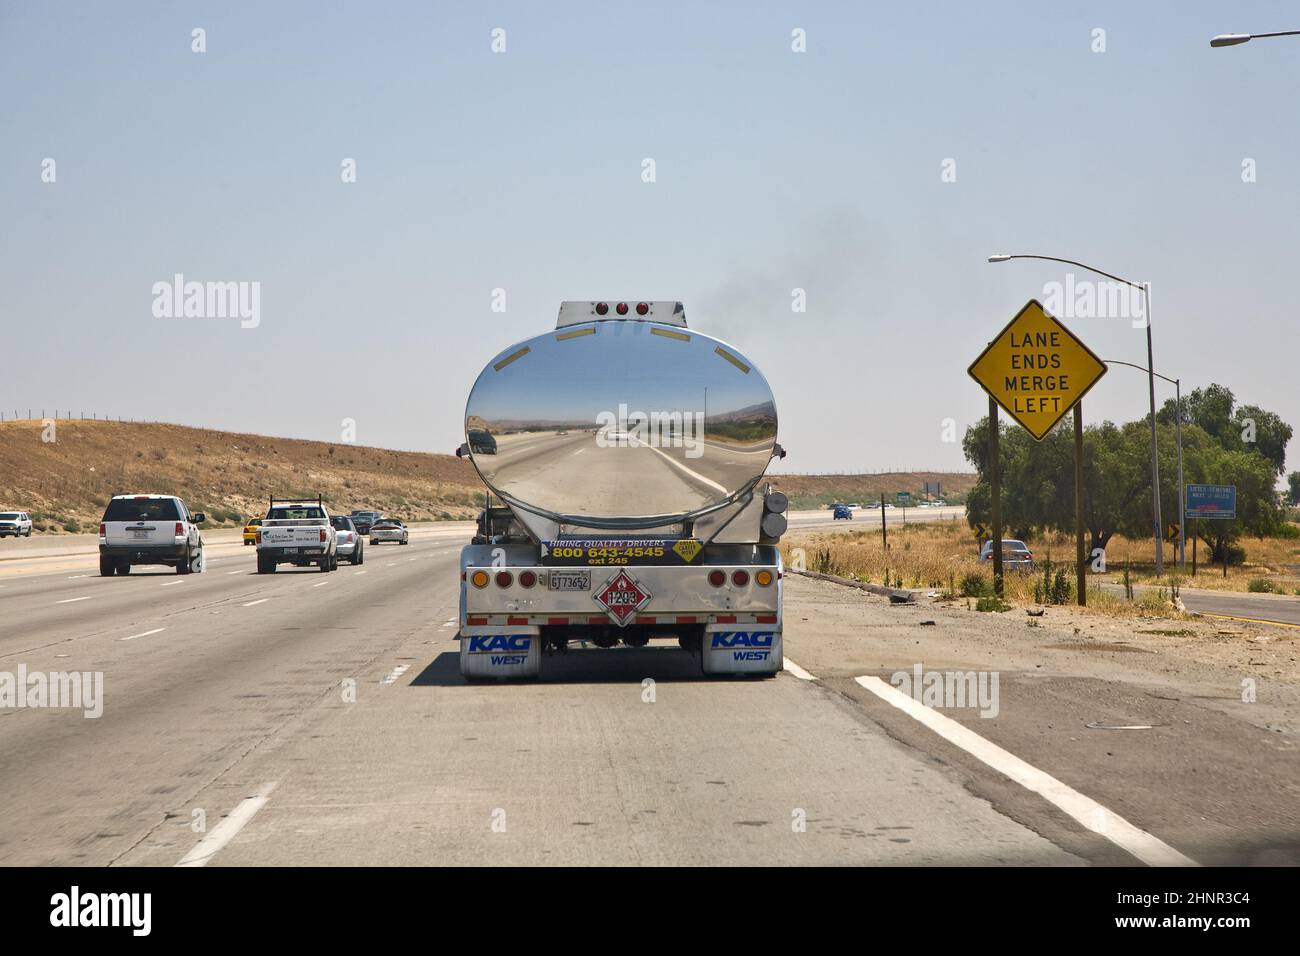 Réflexion d'une voiture dans un camion chromé transportant des liquides Banque D'Images